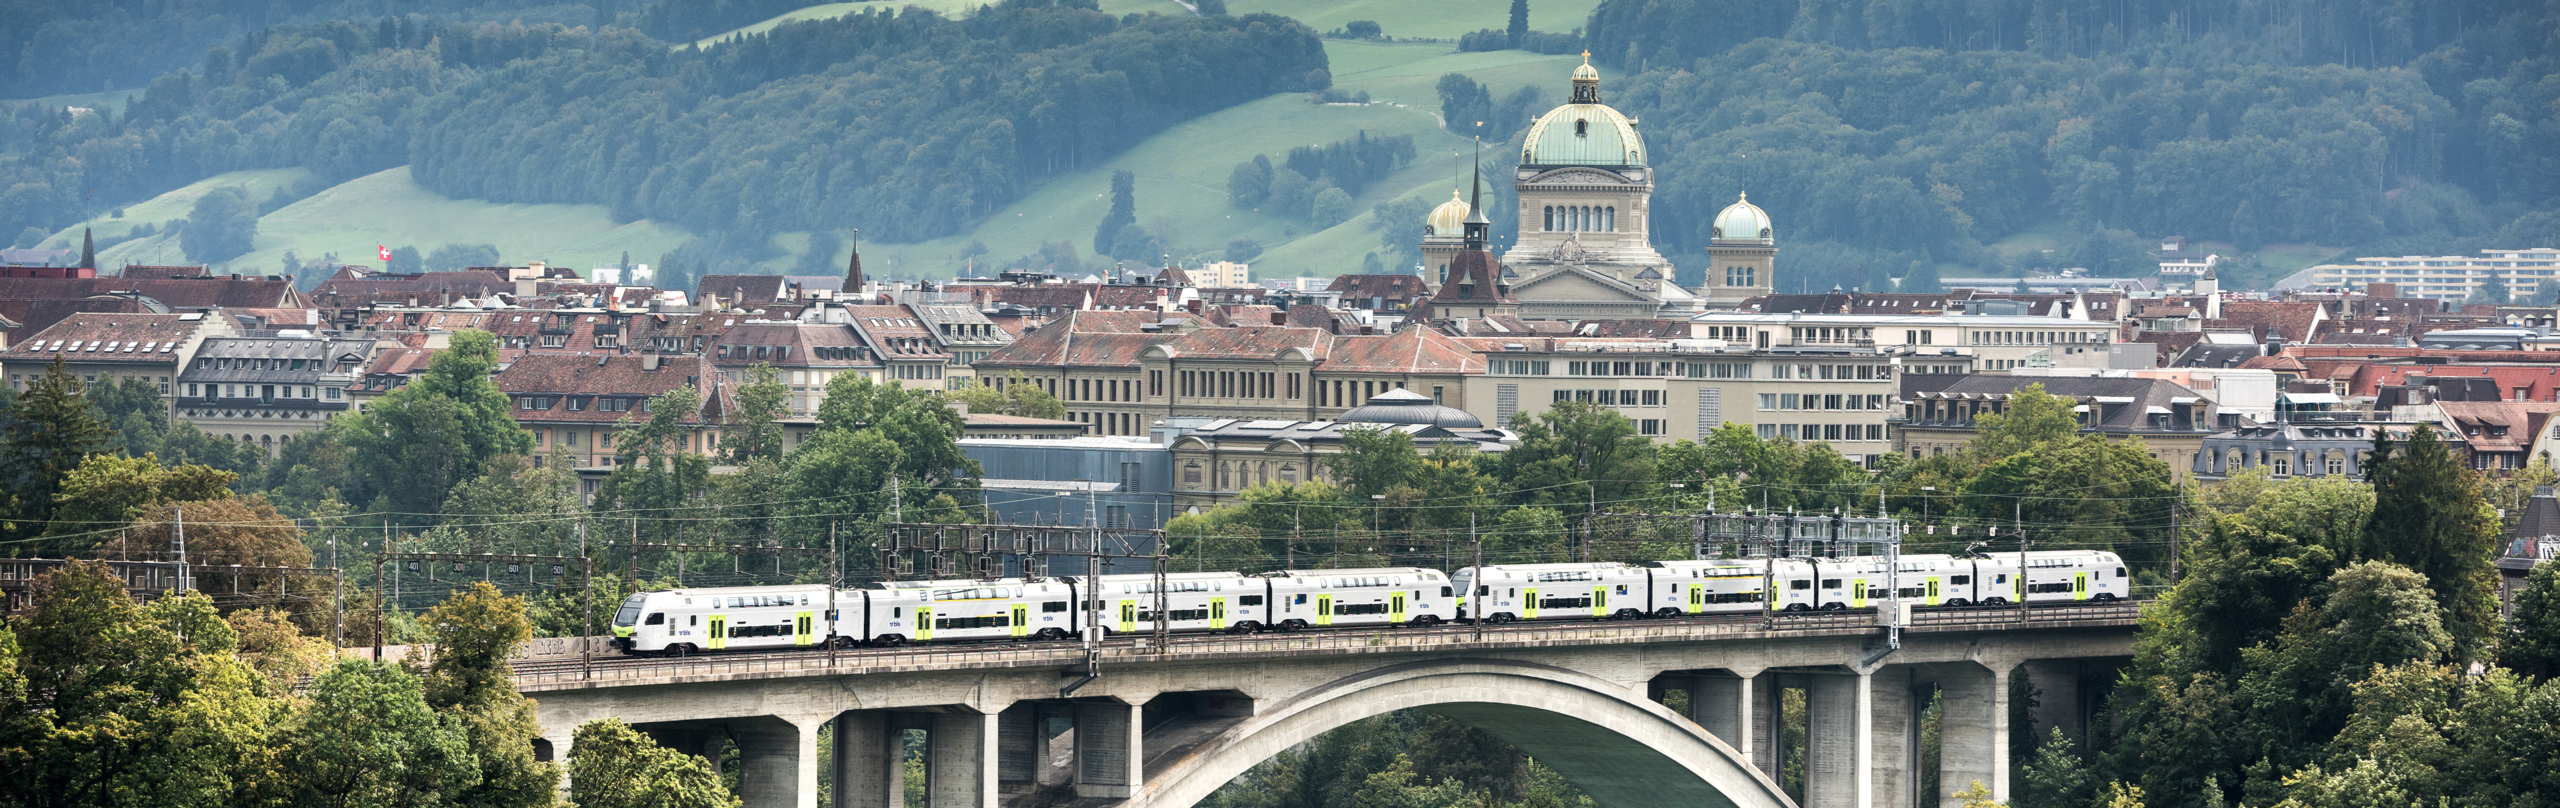 Zug mit der Stadt Bern im Hintergrund